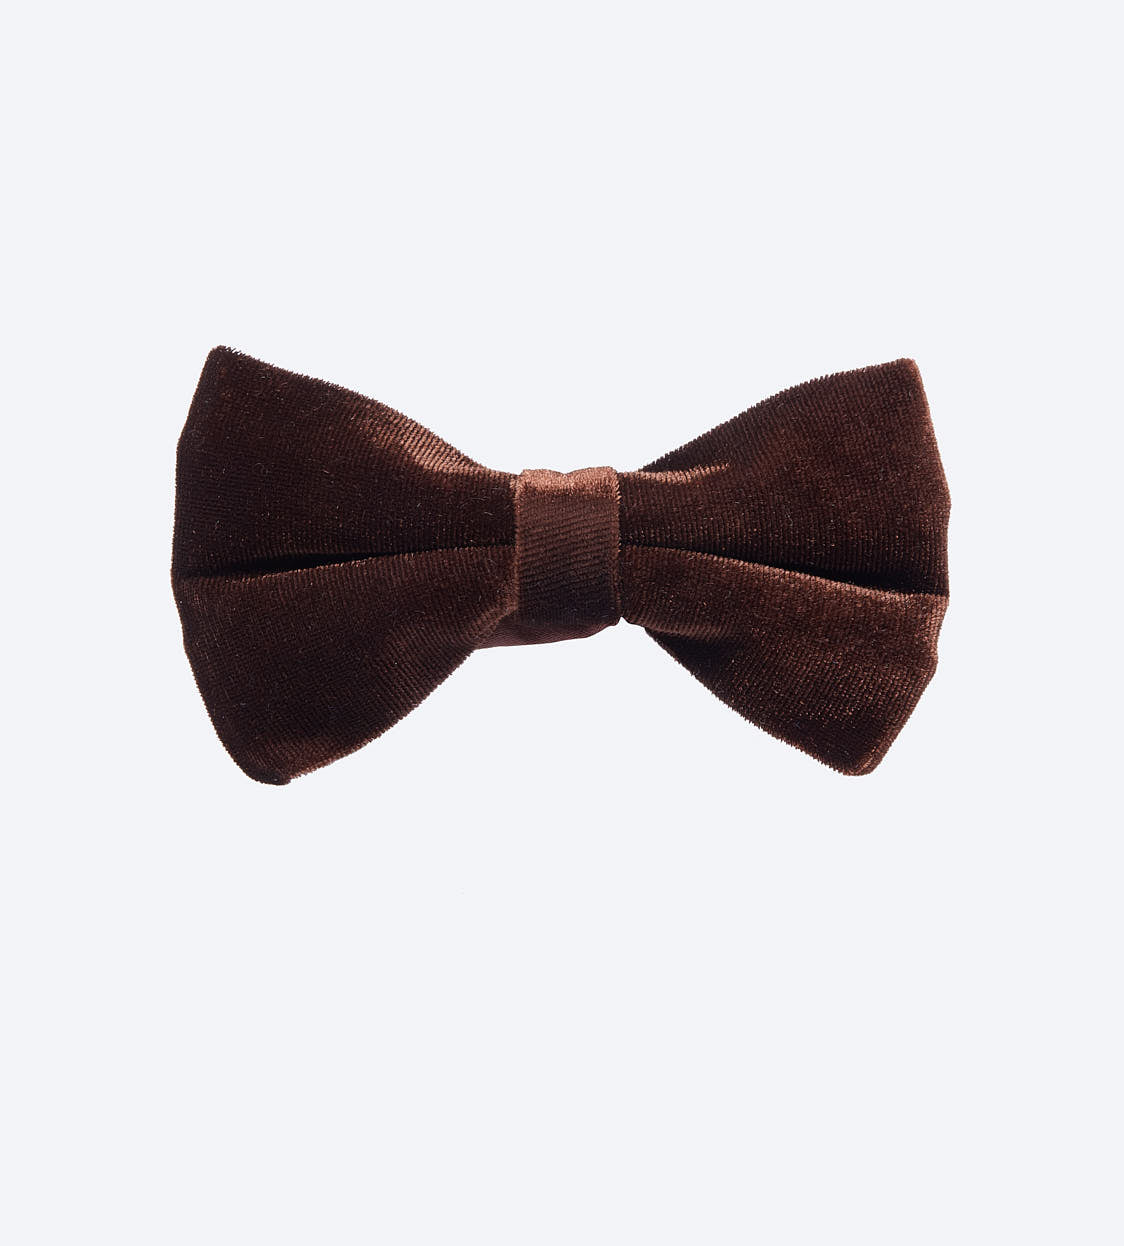 Brown Velvet Bow Tie